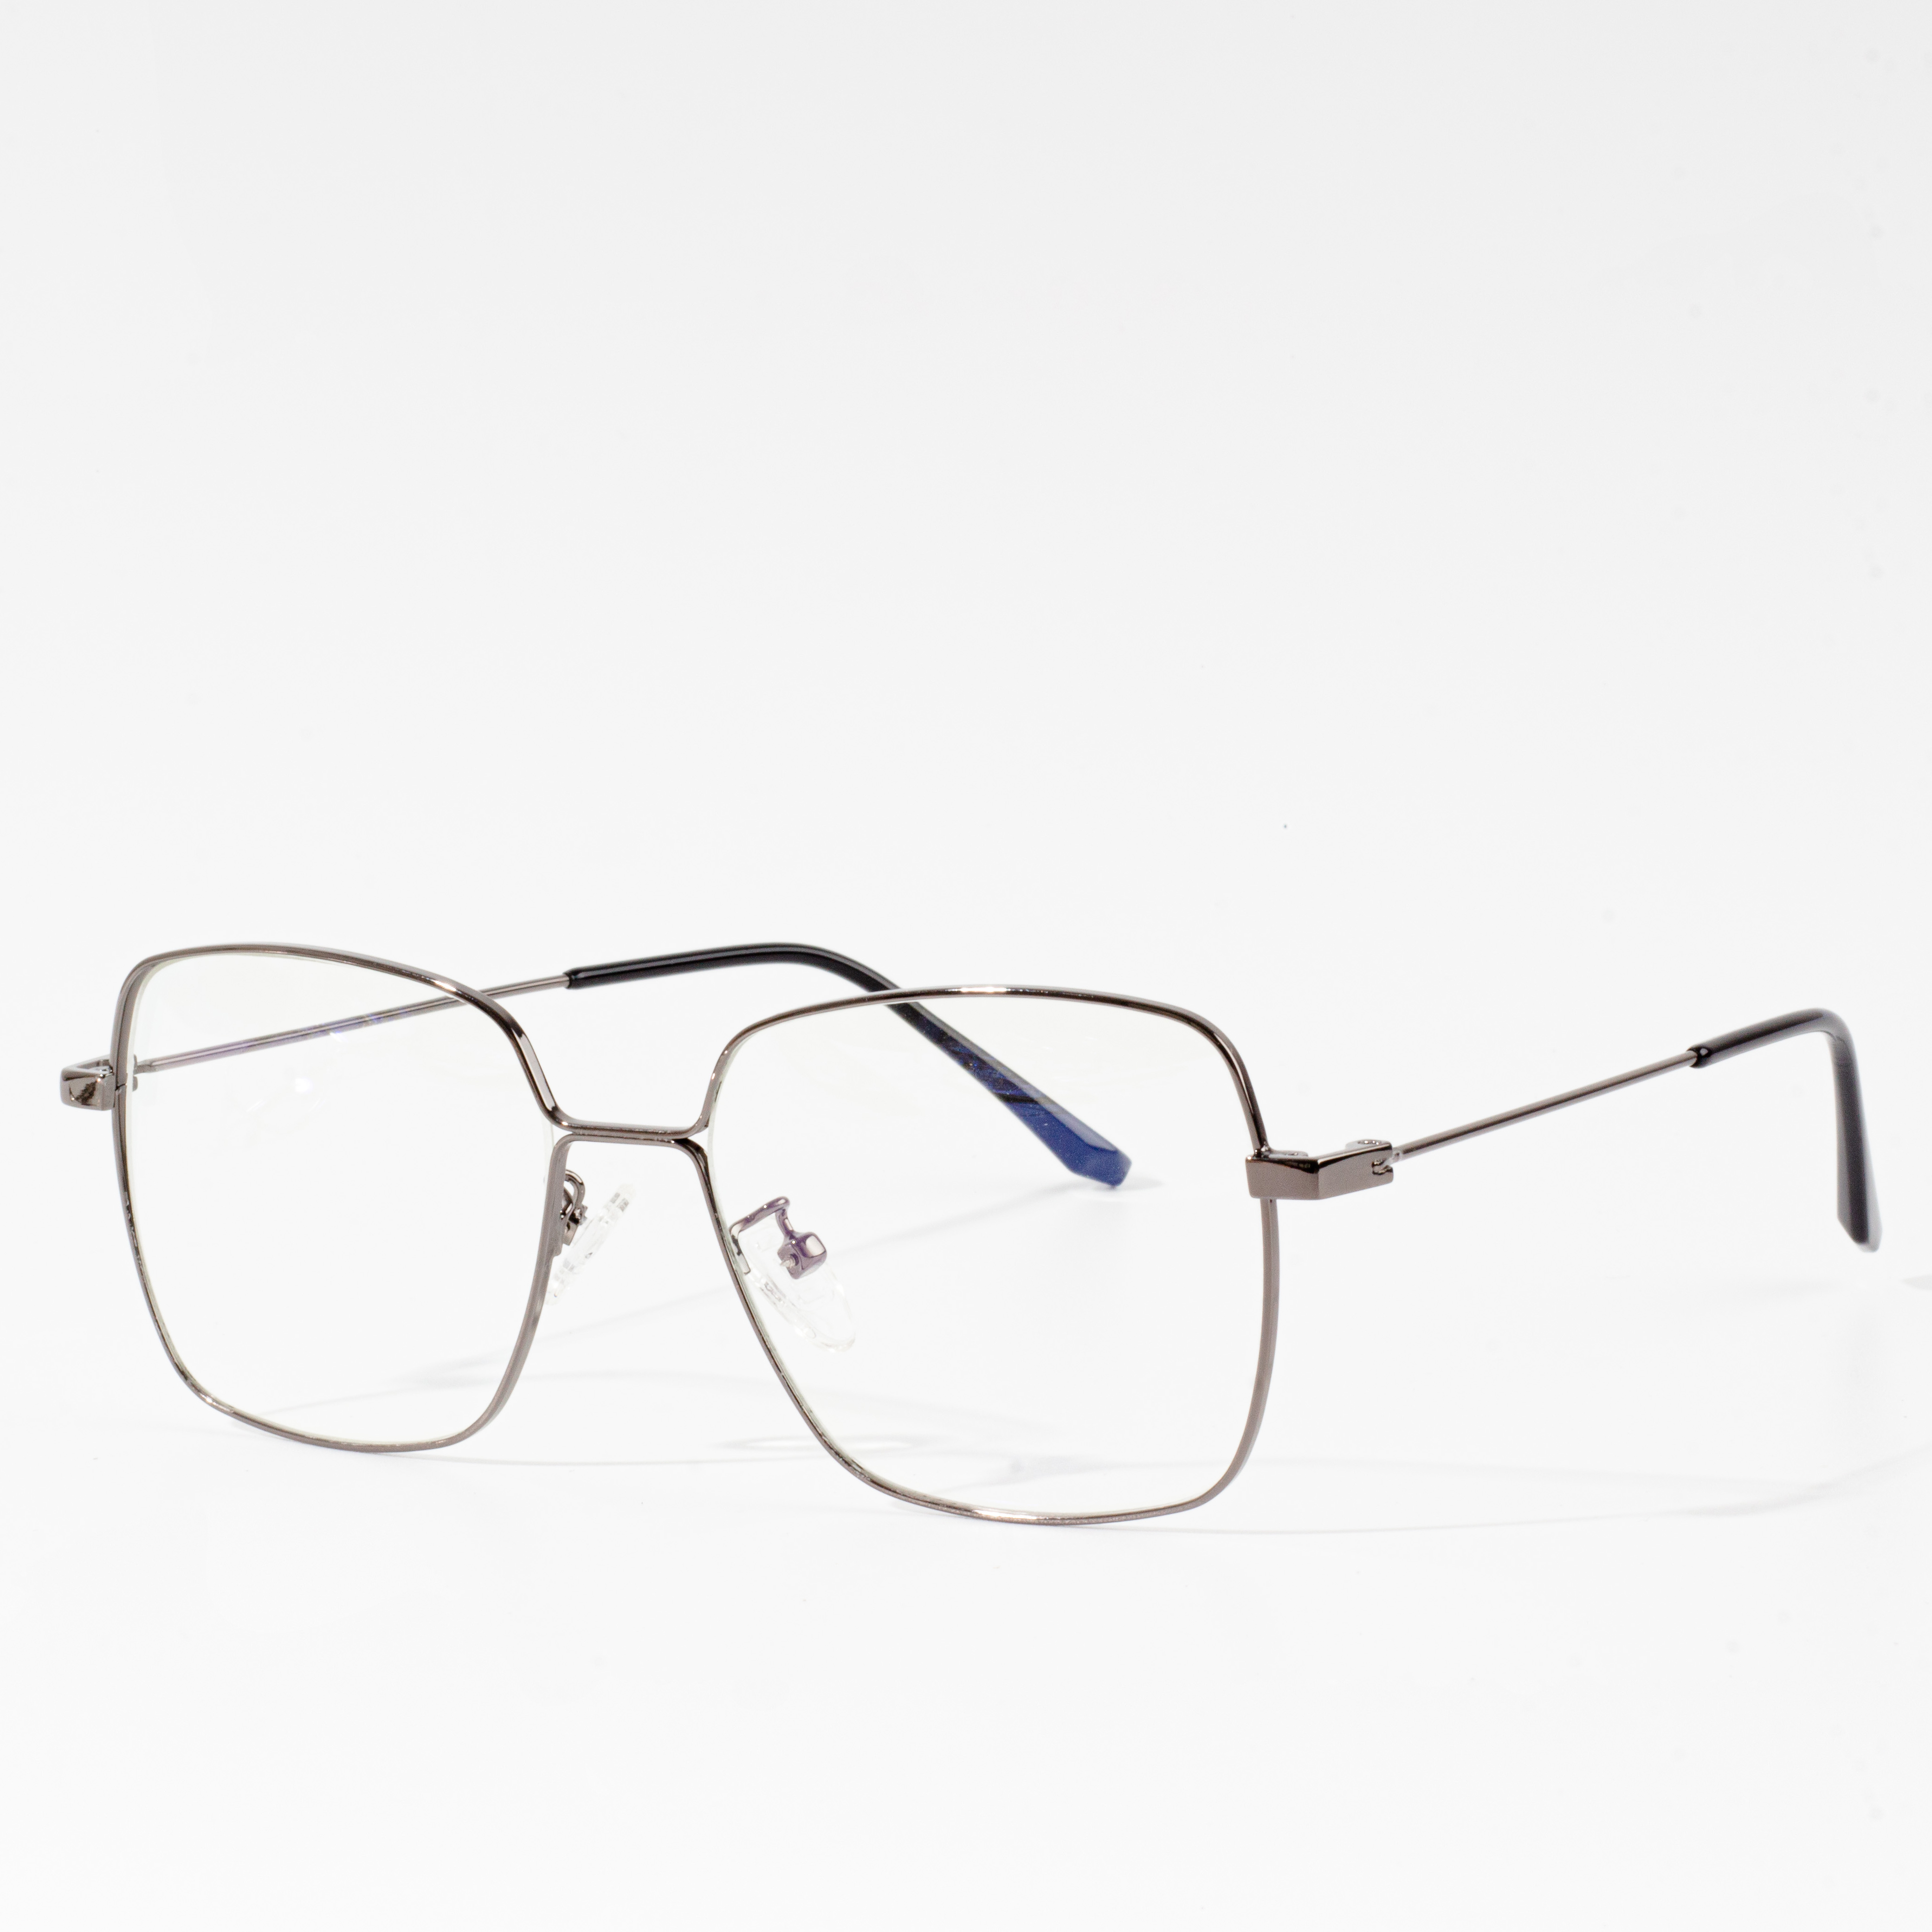 eyeglass frame sizes